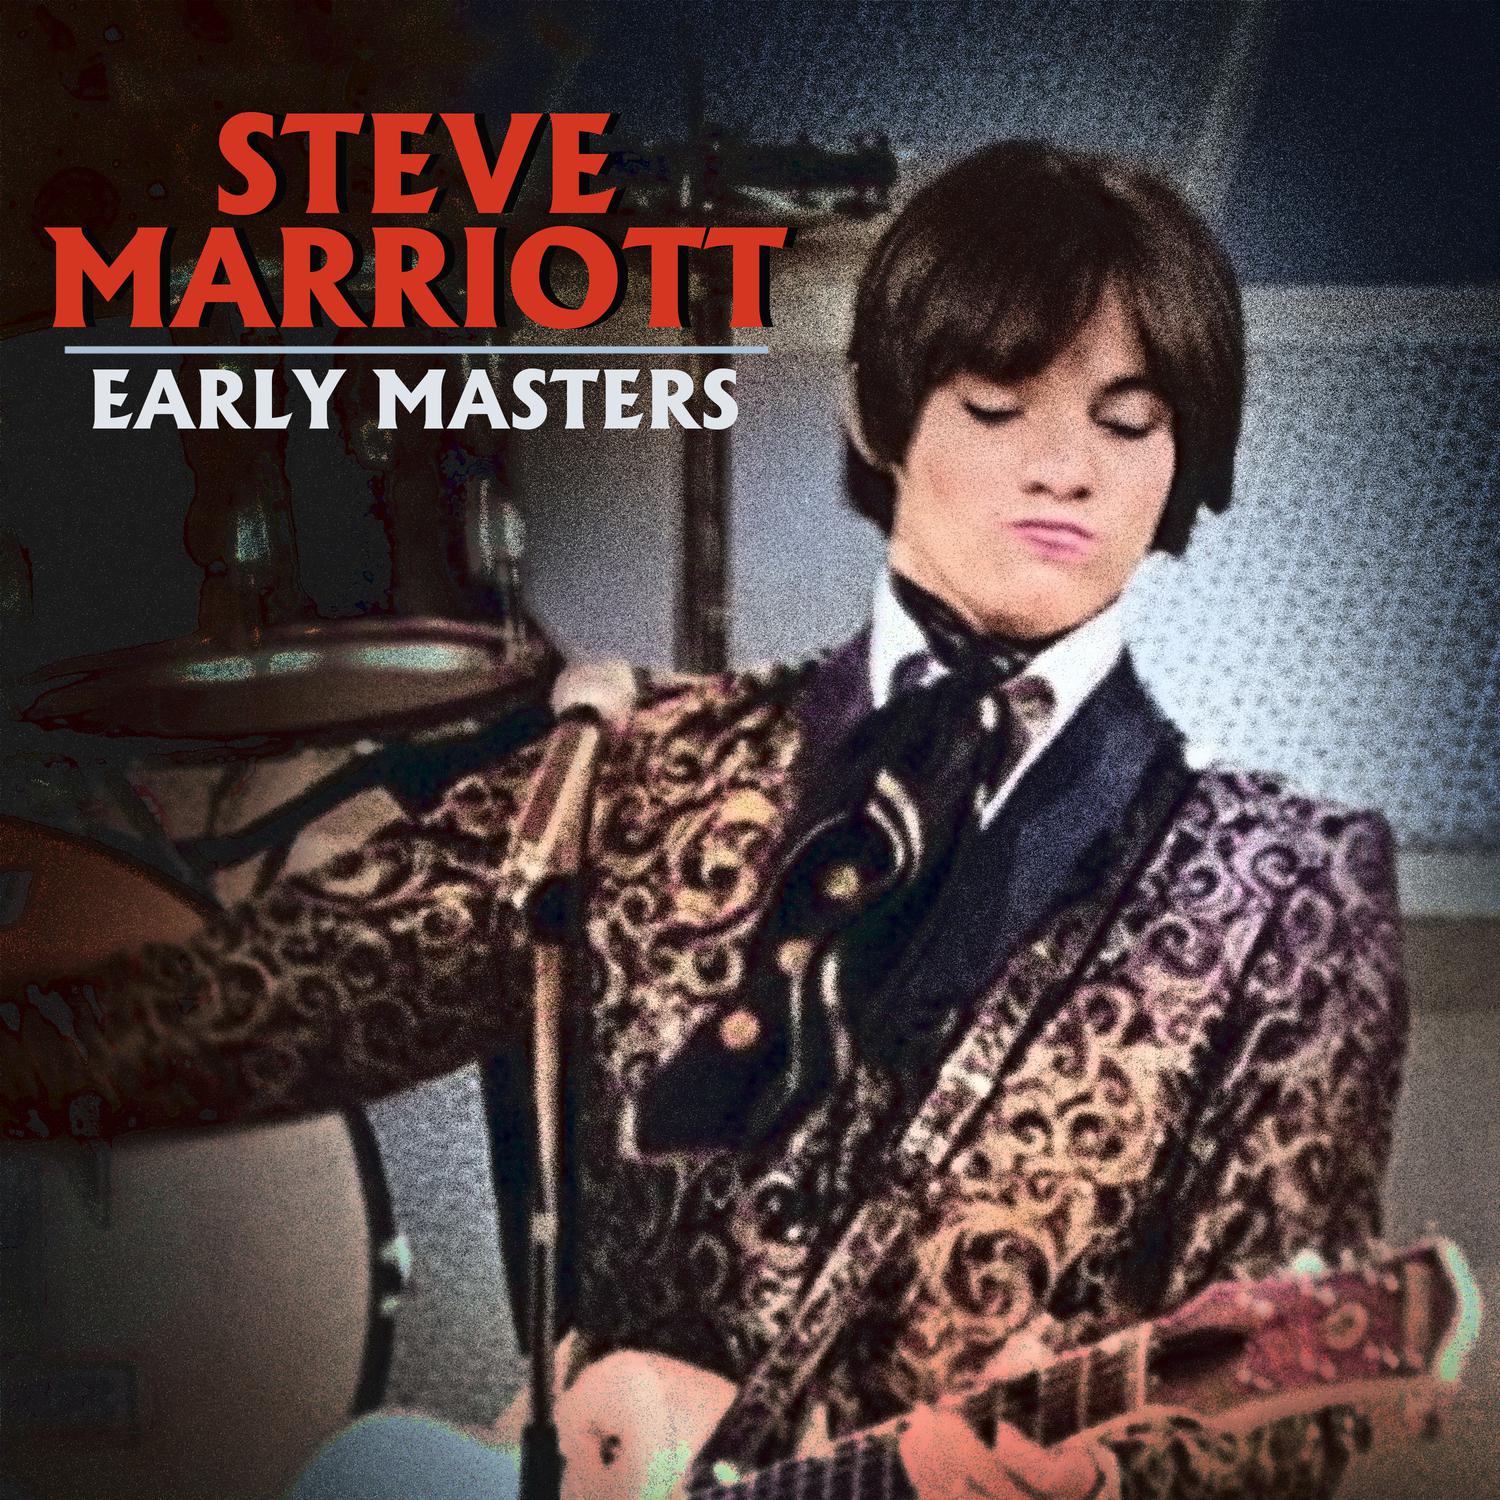 Steve Marriott - Give Her My Regards